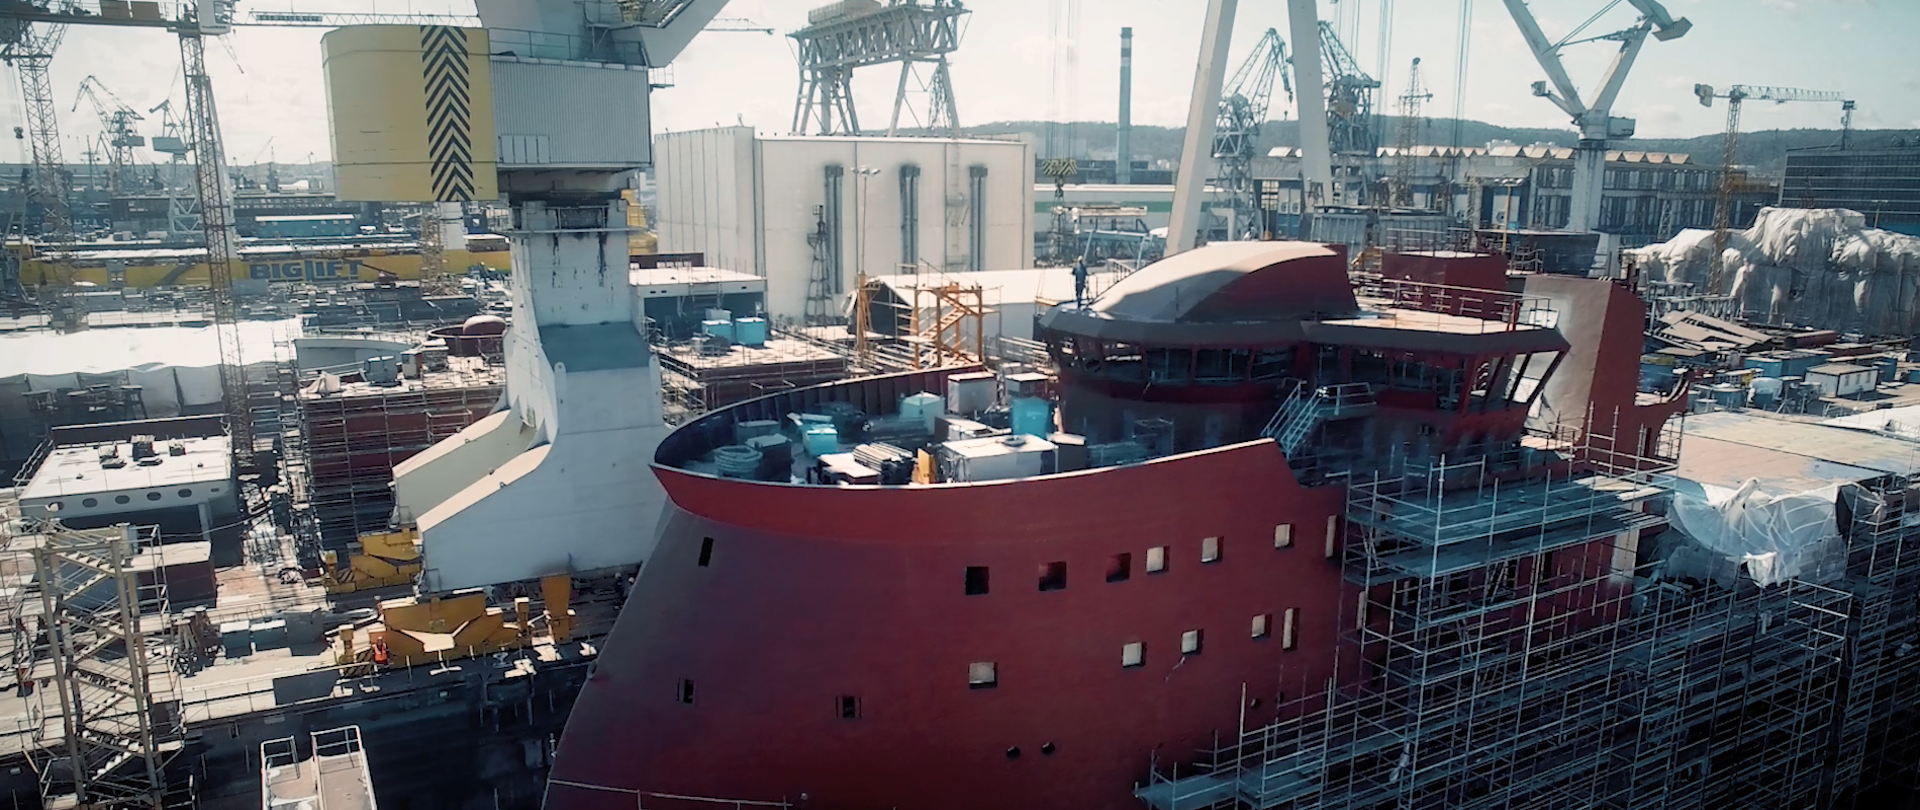 Widok na remontowany statek stojący w stoczni 